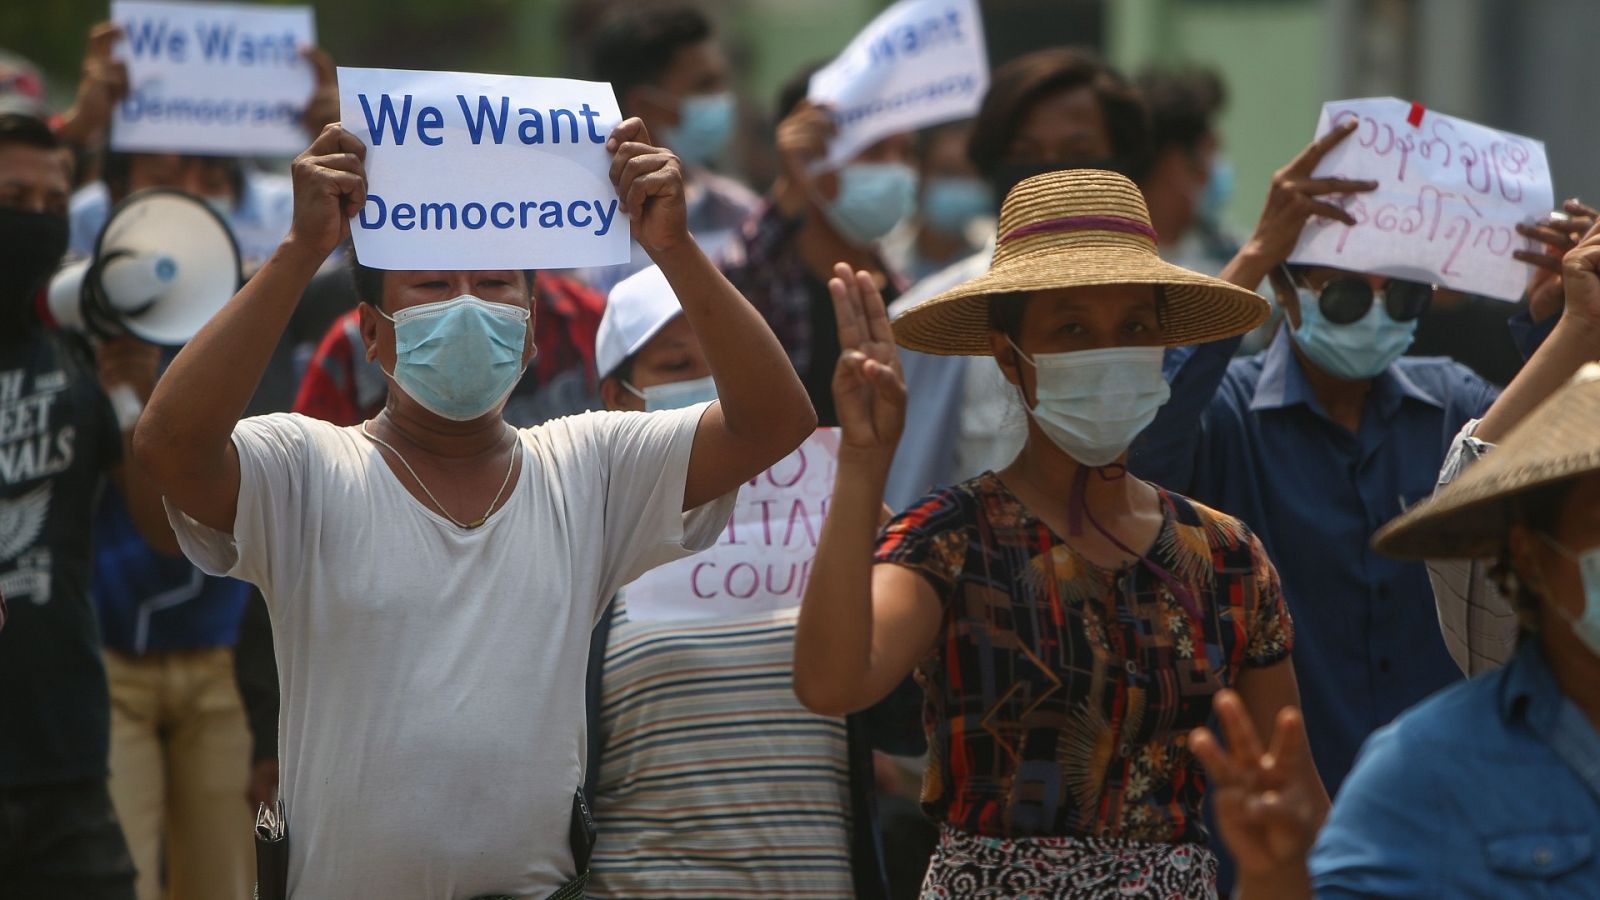 Los manifestantes saludan con tres dedos y llevan pancartas que piden la democracia durante una protesta antimilitar en Mandalay, Myanmar, el 26 de abril de 2021